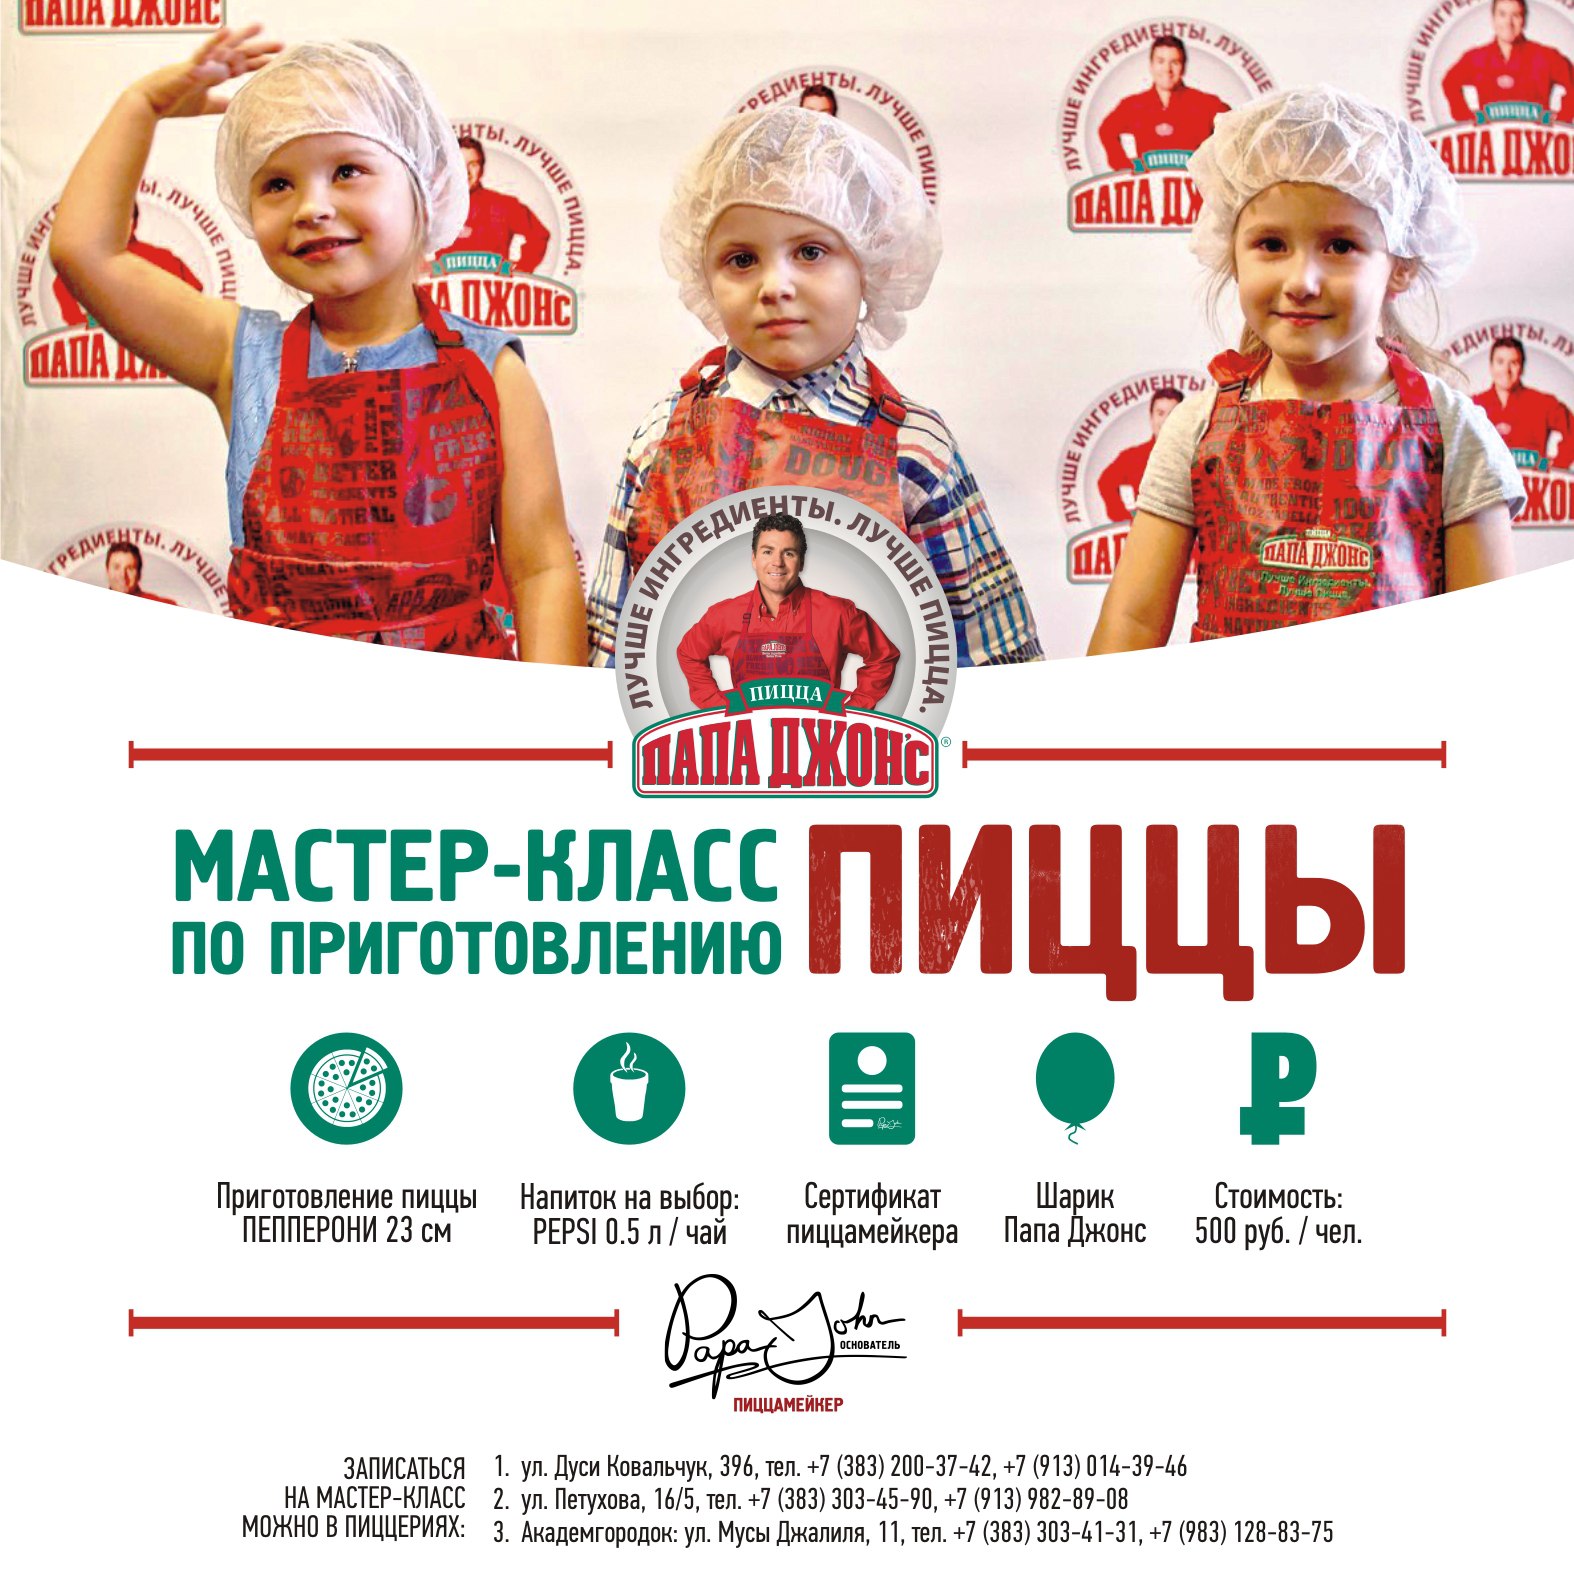 Тест-драйв пиццерии «Папа Джонс». Отзывы о мастер-классе для детей по приготовлению пиццы. «PAPA JOHN'S» Новосибирск, отзывы посетителей.